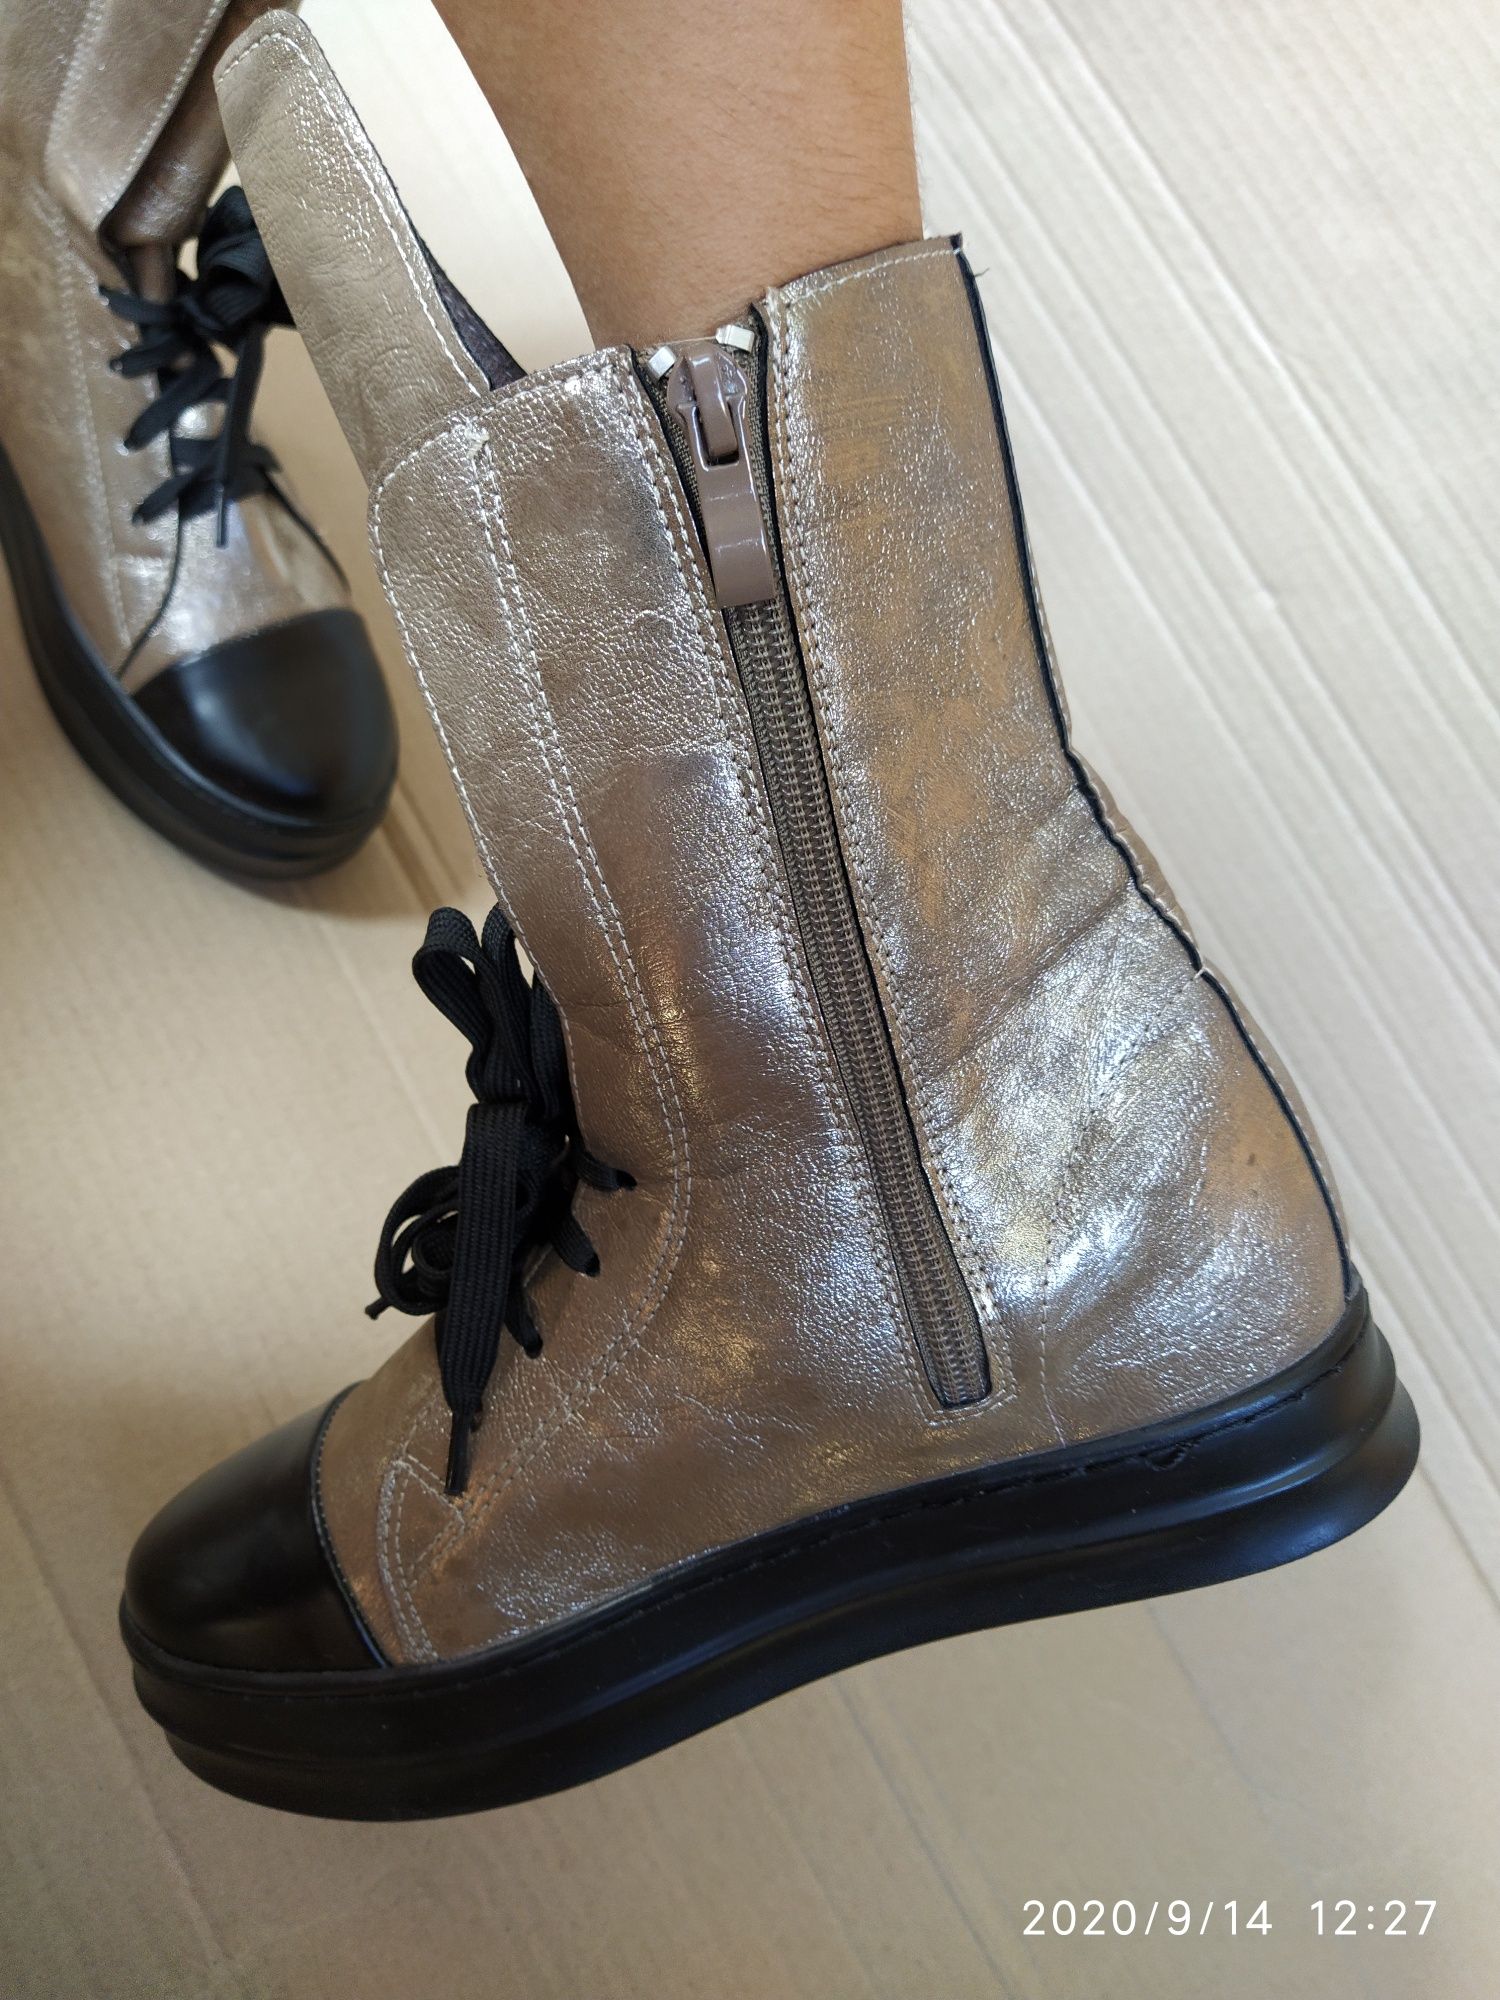 Fersini новые блестящие серебристые кеды ботинки сапожки, стелька 24,2